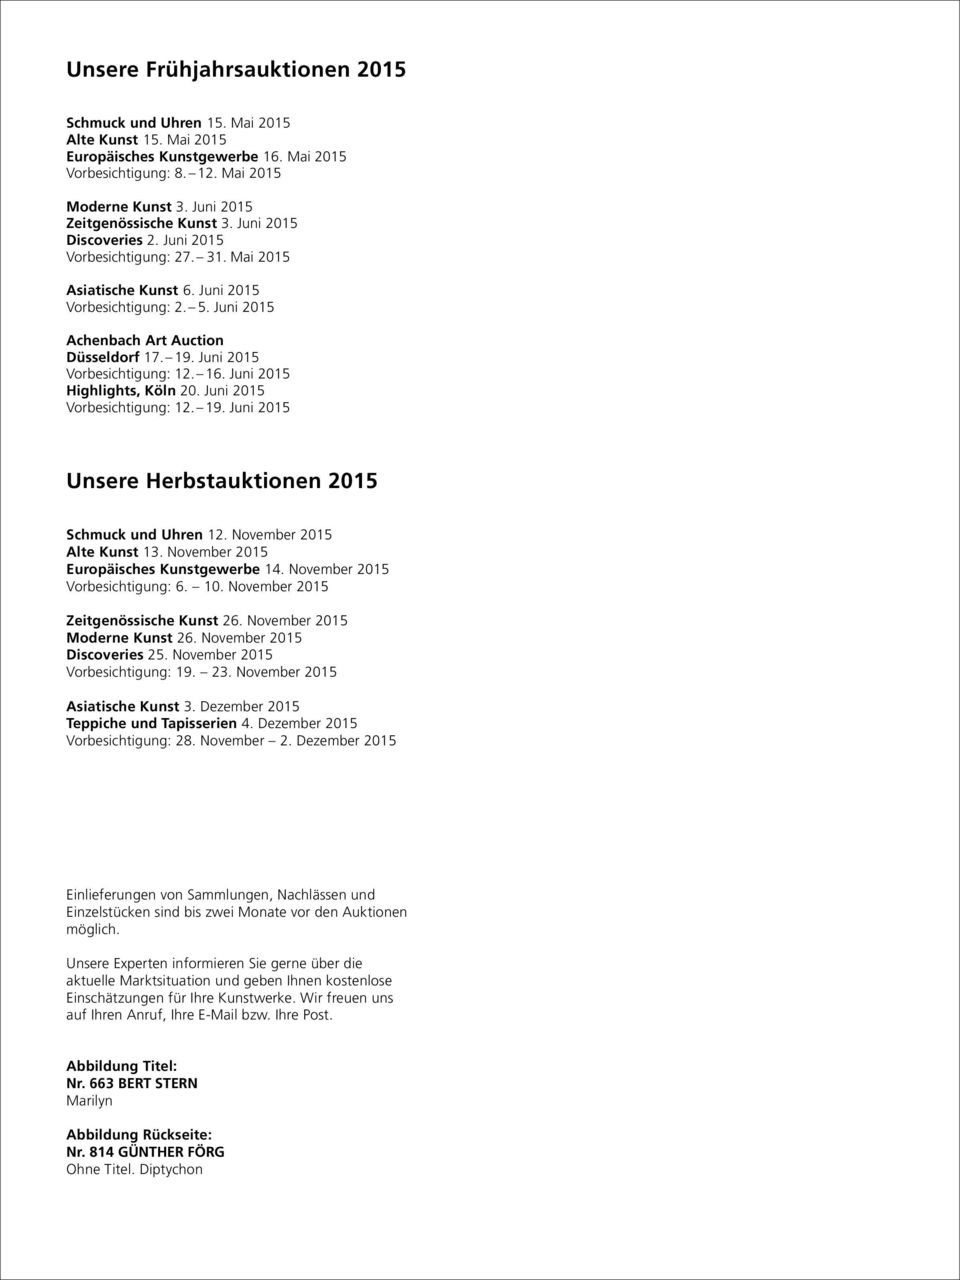 Juni 2015 Achenbach Art Auction Düsseldorf 17. 19. Juni 2015 Vorbesichtigung: 12. 16. Juni 2015 Highlights, Köln 20. Juni 2015 Vorbesichtigung: 12. 19. Juni 2015 Unsere Herbstauktionen 2015 Schmuck und Uhren 12.